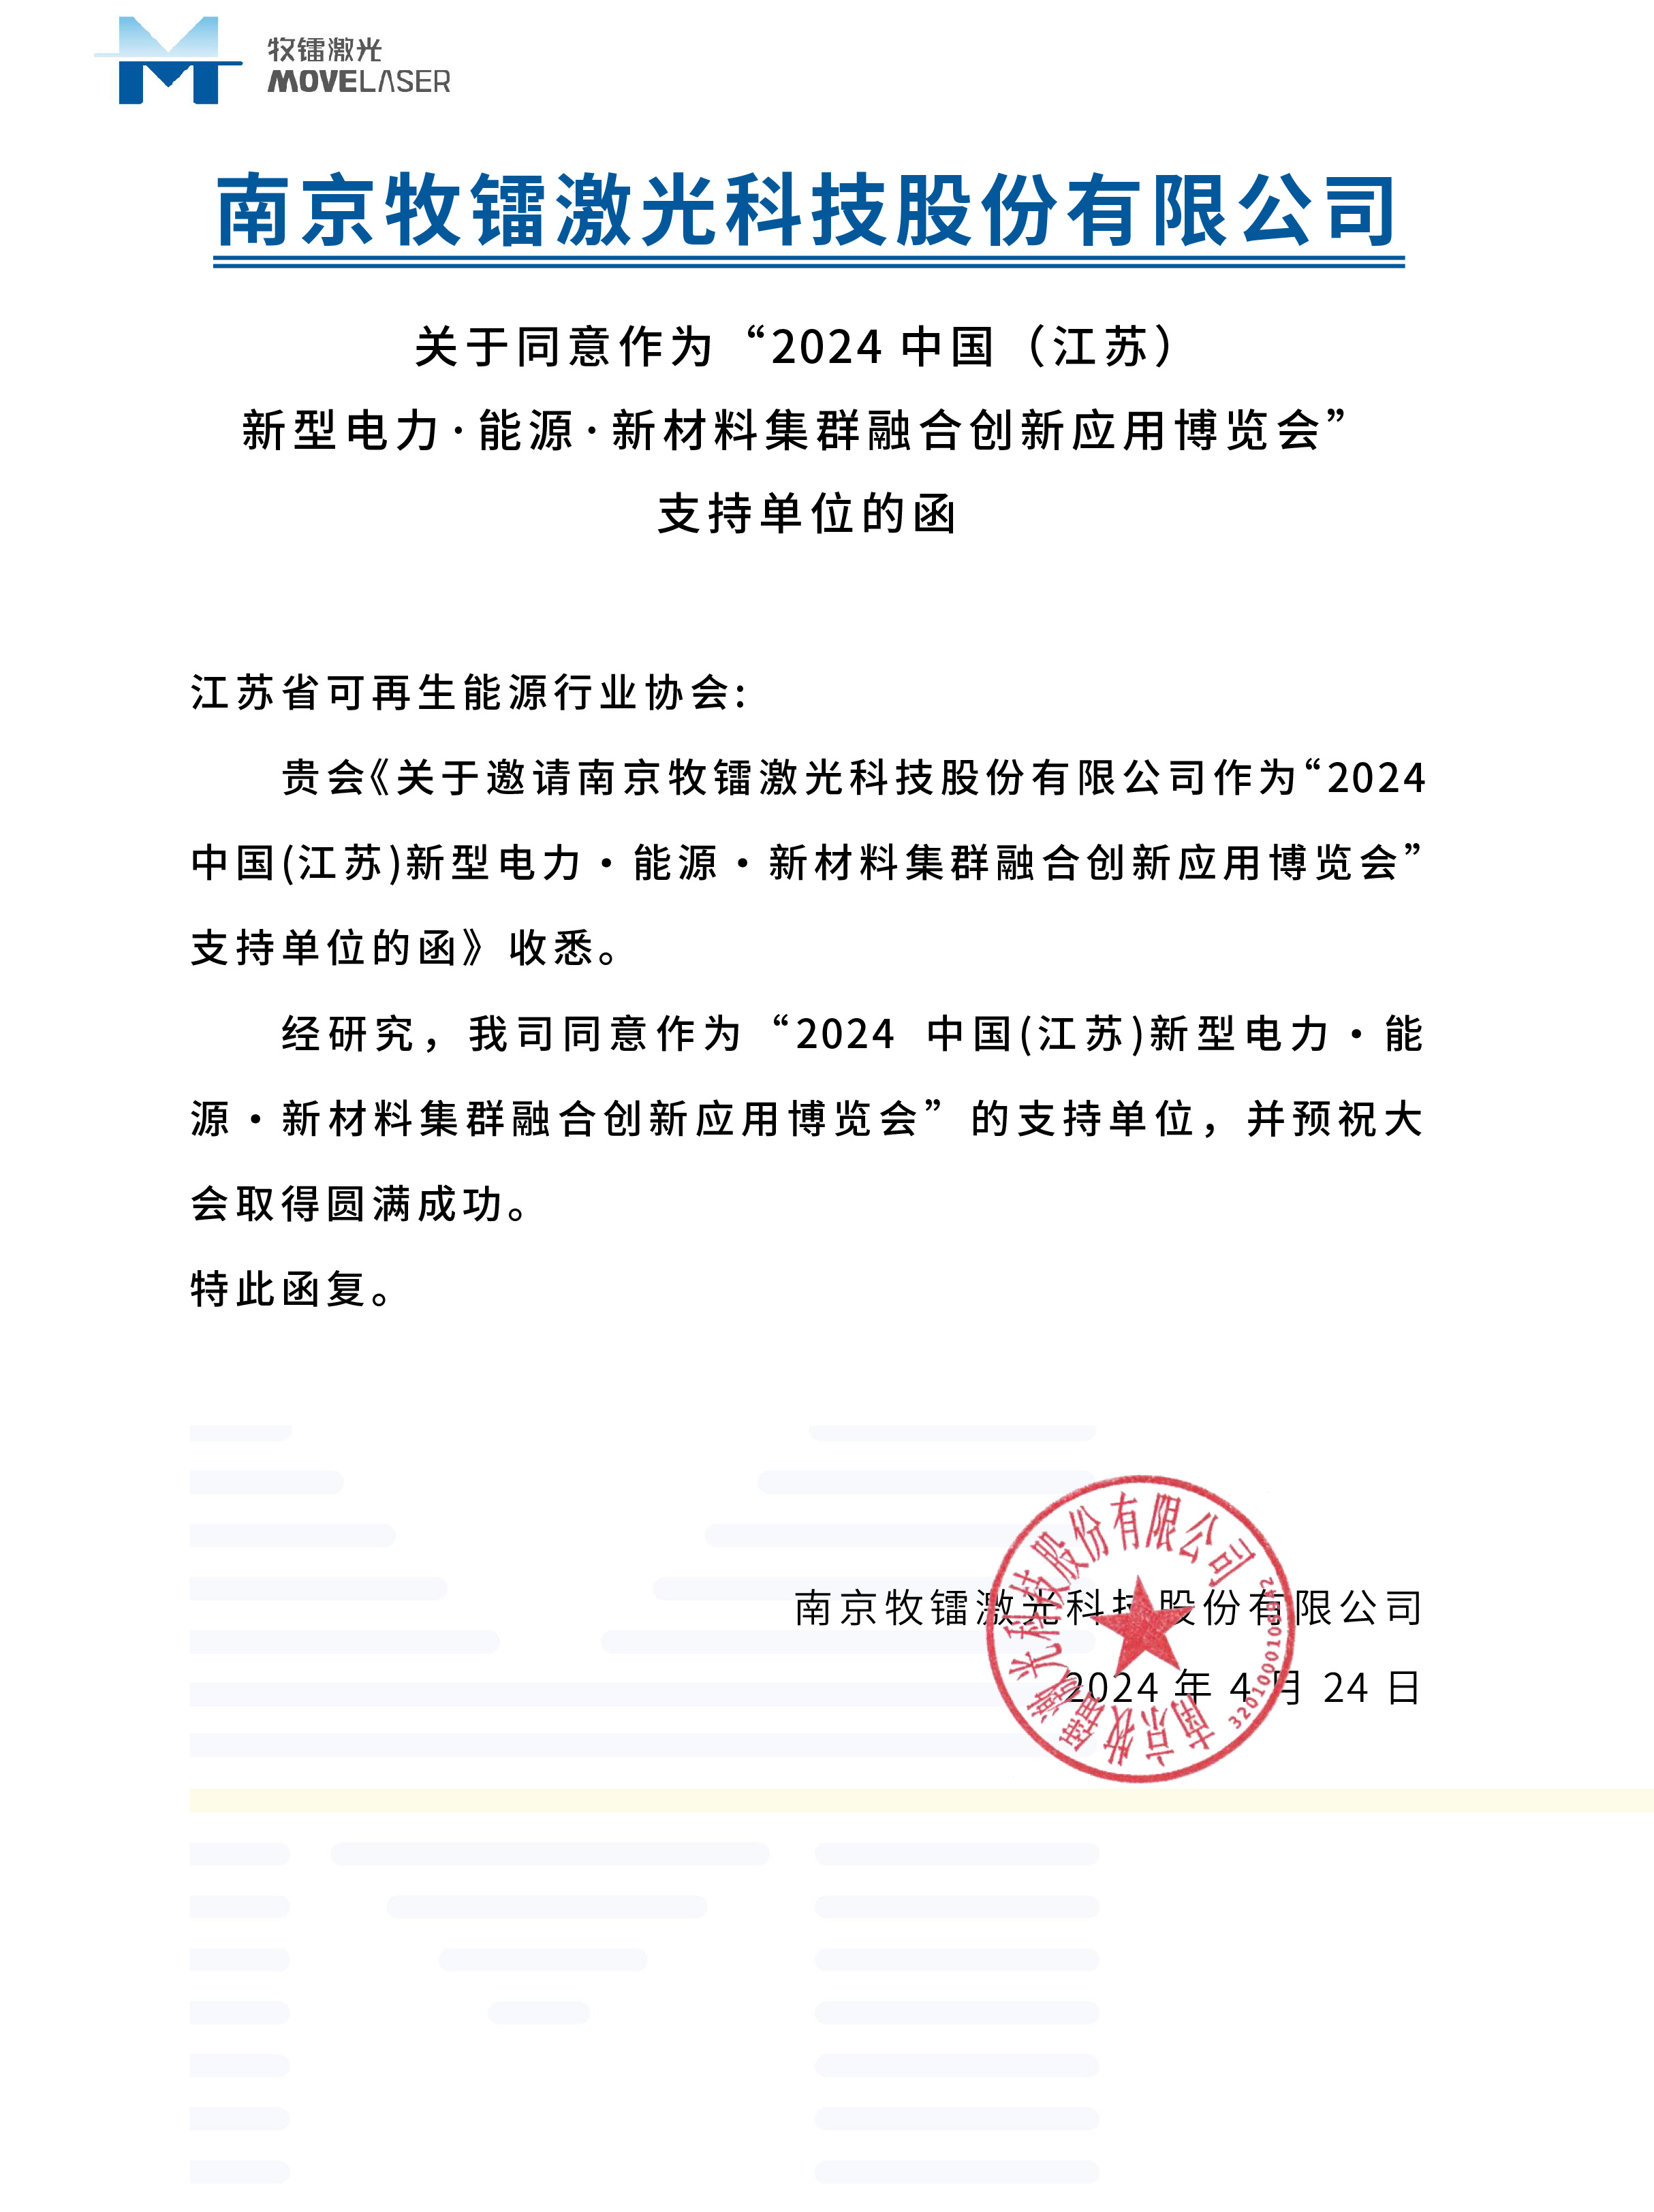 南京牧镭激光科技股份有限公司